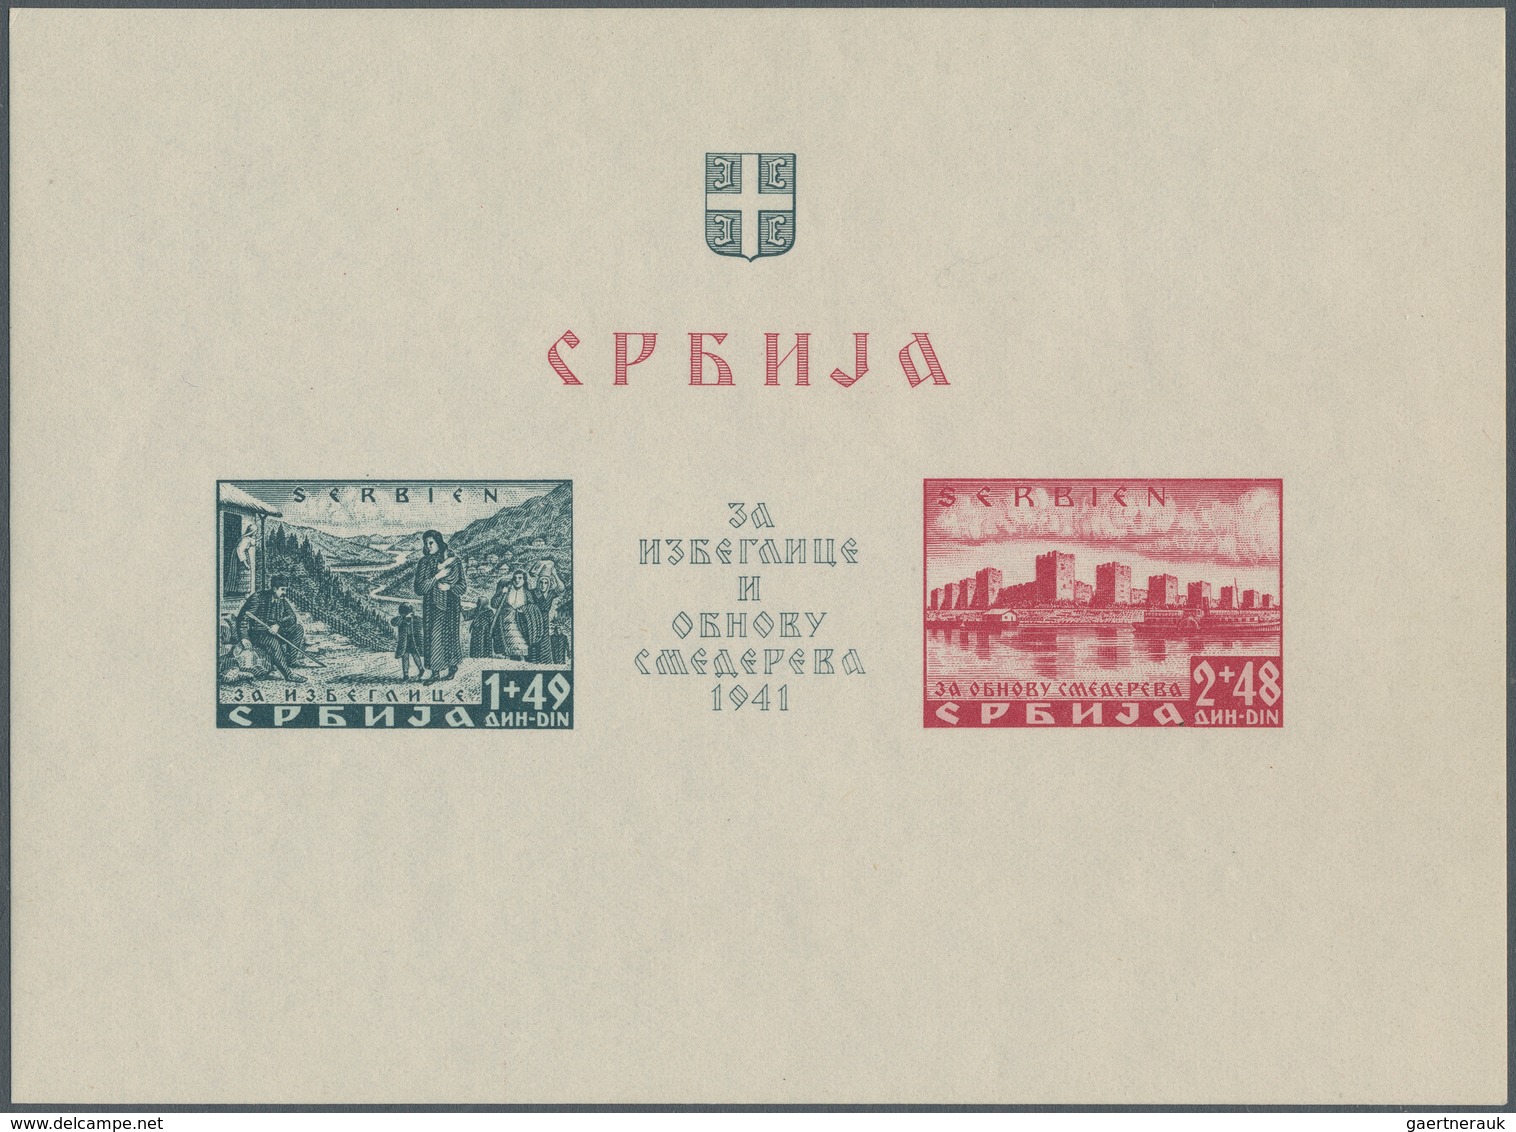 Dt. Besetzung II WK - Serbien: 1941, Katastrophengeschädigte, Blockpaar Postfrisch, Mi. 700,- - Occupation 1938-45